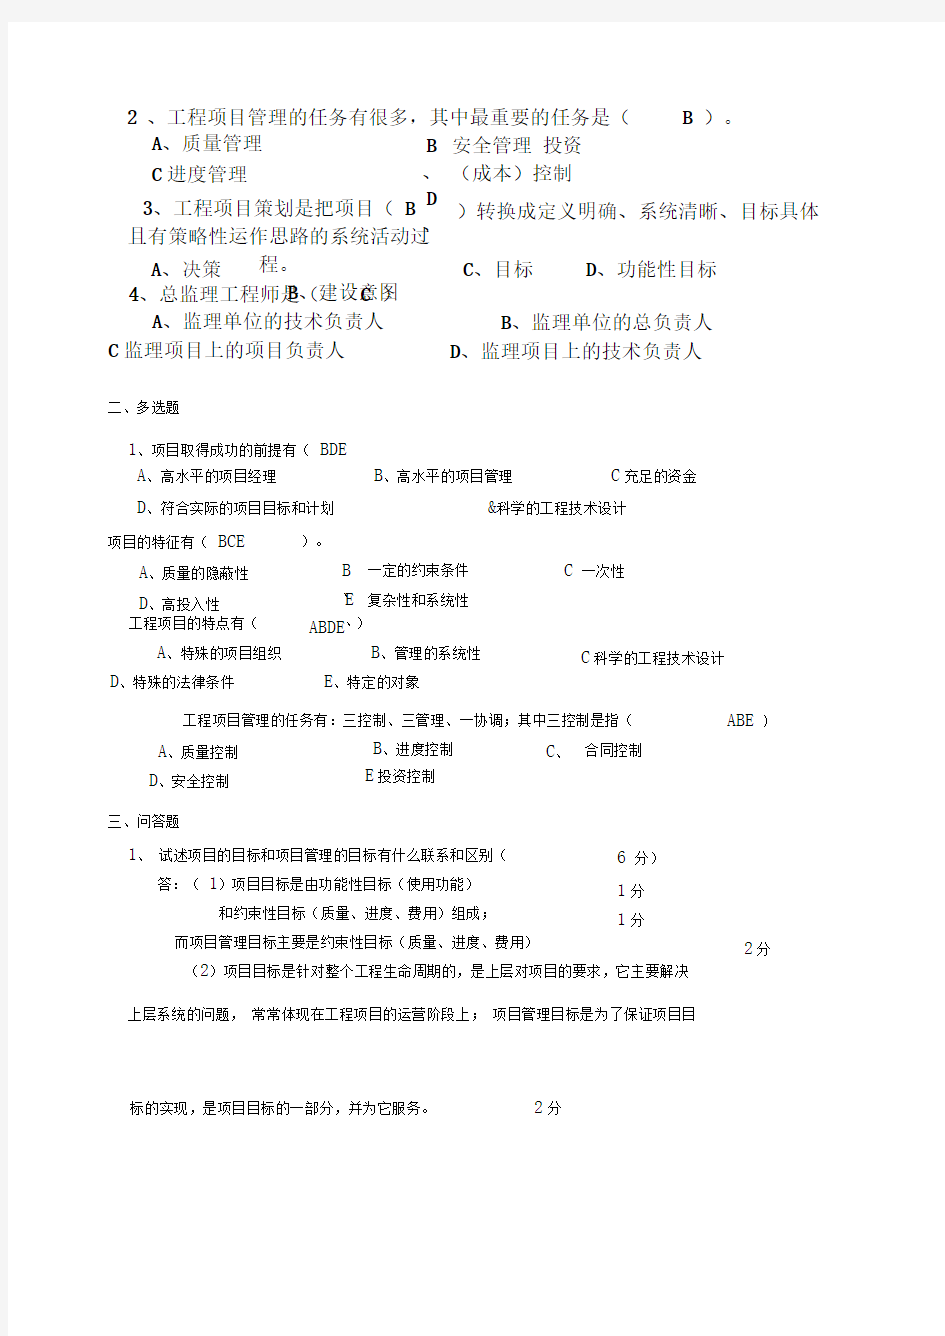 习题作业-华中科技大学-工程项目管理